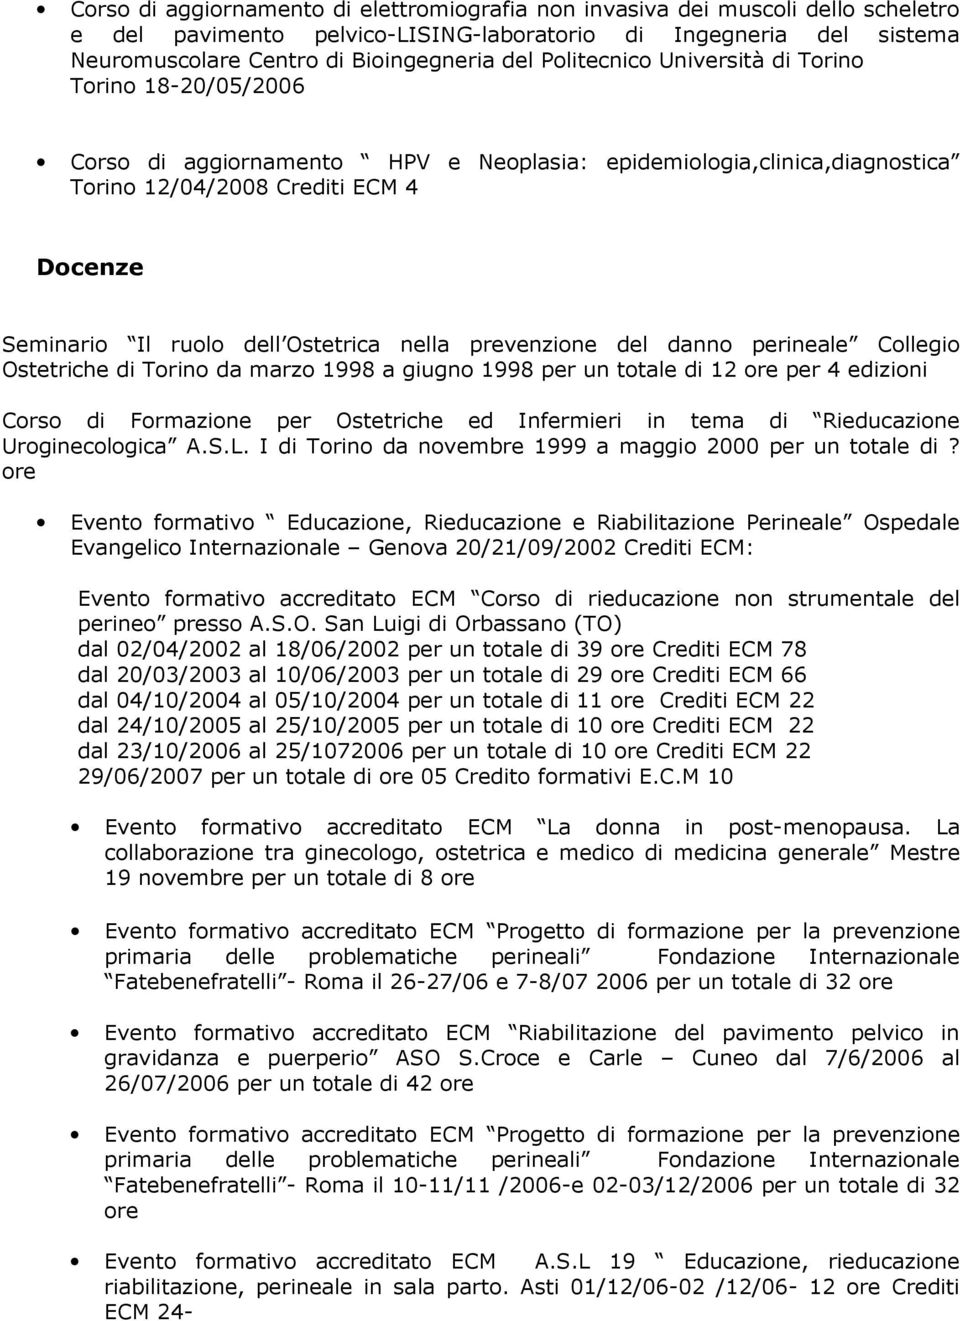 Ostetrica nella prevenzione del danno perineale Collegio Ostetriche di Torino da marzo 1998 a giugno 1998 per un totale di 12 ore per 4 edizioni Corso di Formazione per Ostetriche ed Infermieri in